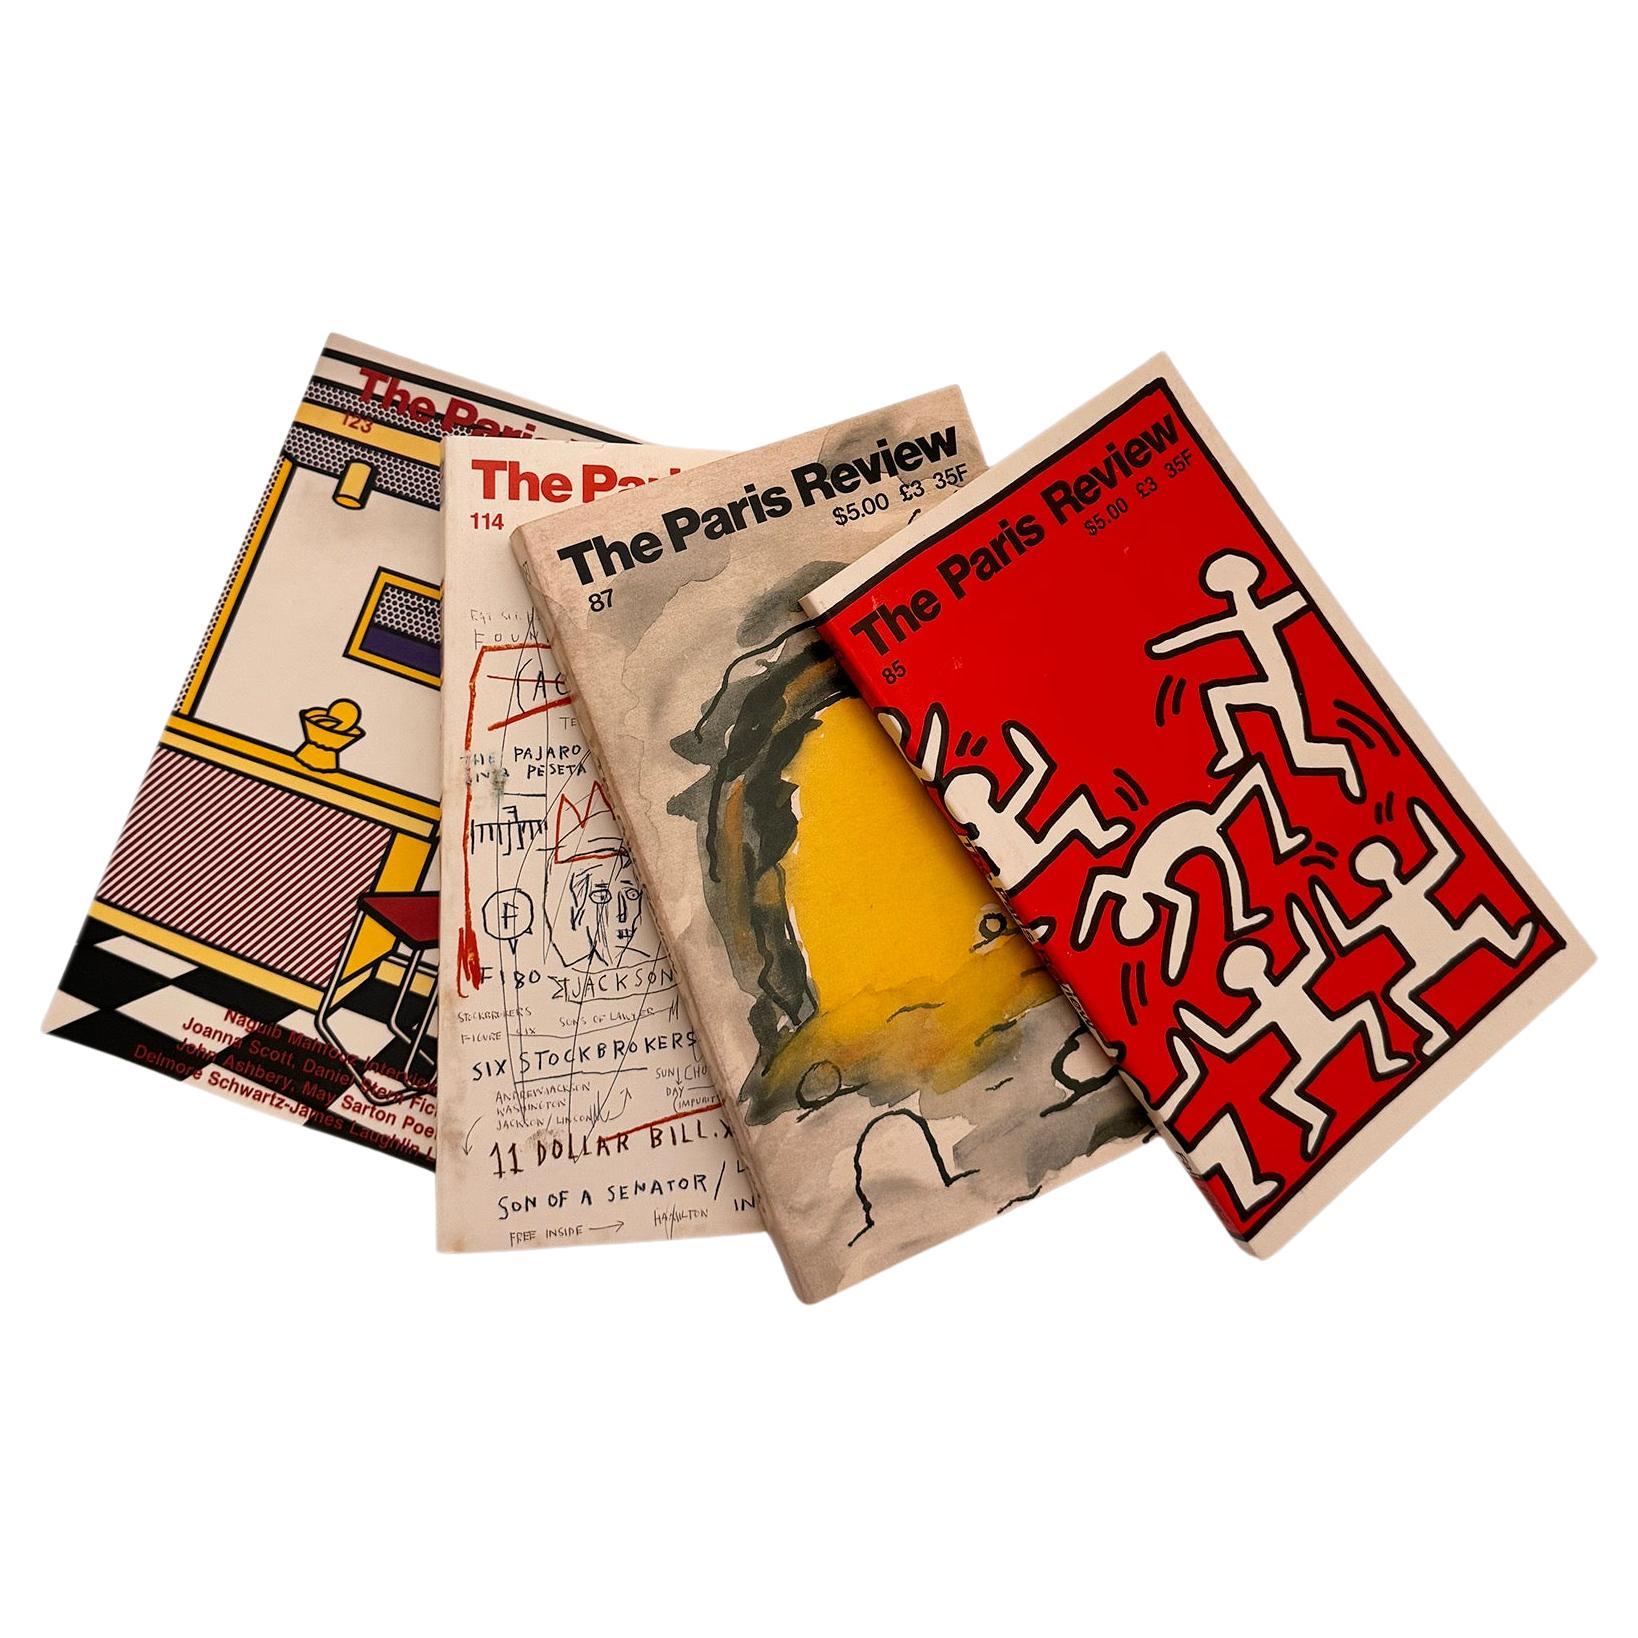 Jean-Michel Basquiat, Keith Haring, Roy Michele : The Paris Review 1982-1992 :

Des éditions anciennes de The Paris Review, dont l'une présente une page intérieure de 1983 sur le 